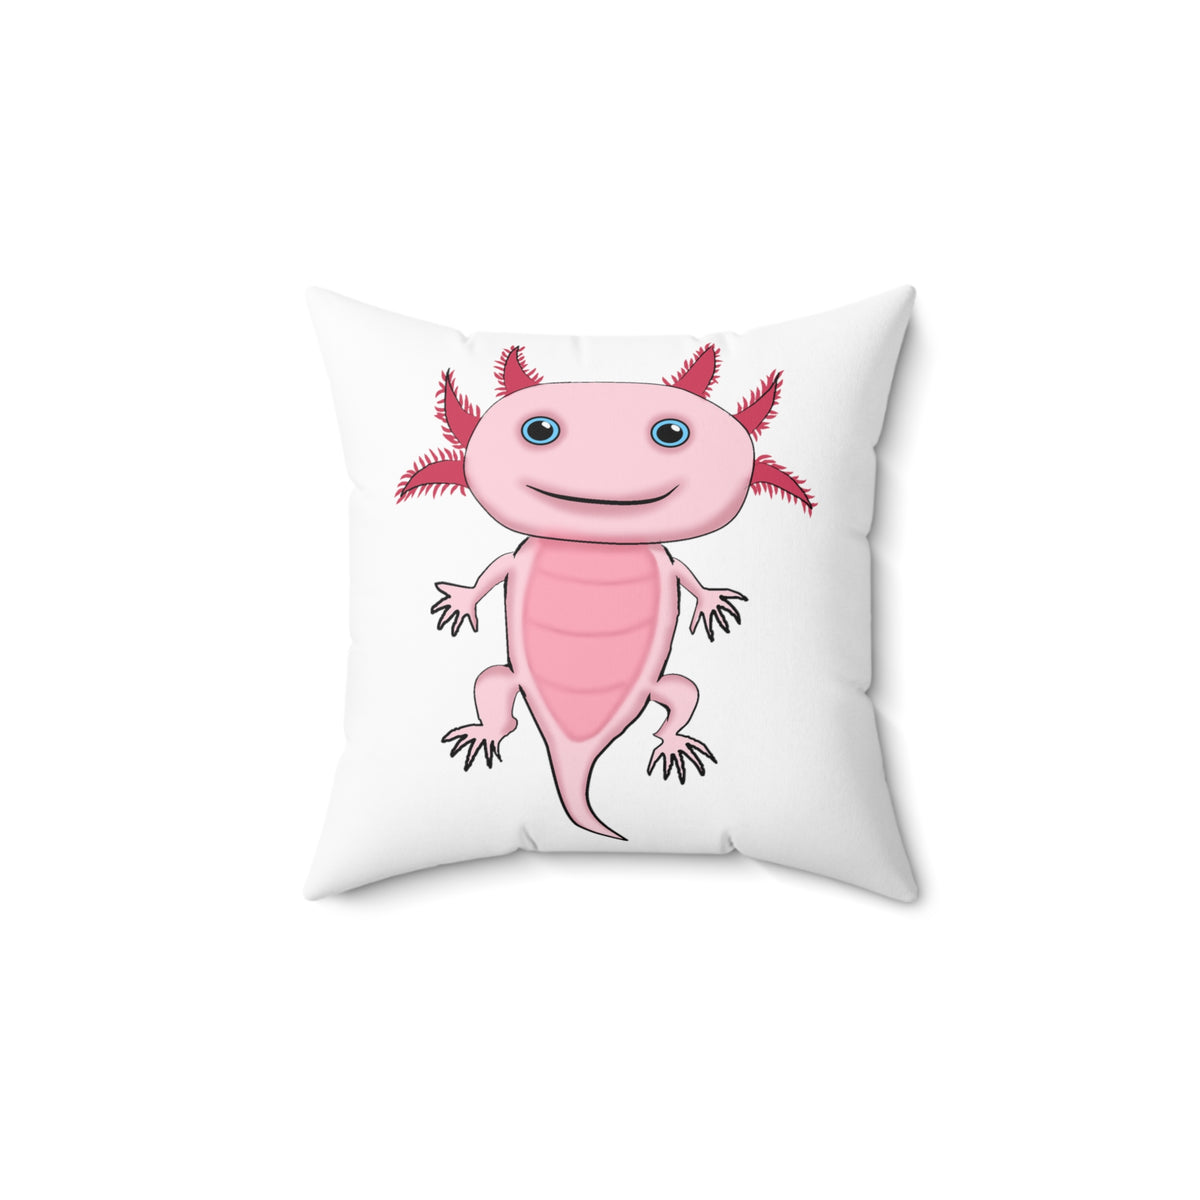 Adorable Pink Axolotl Spun Polyester Square Pillow